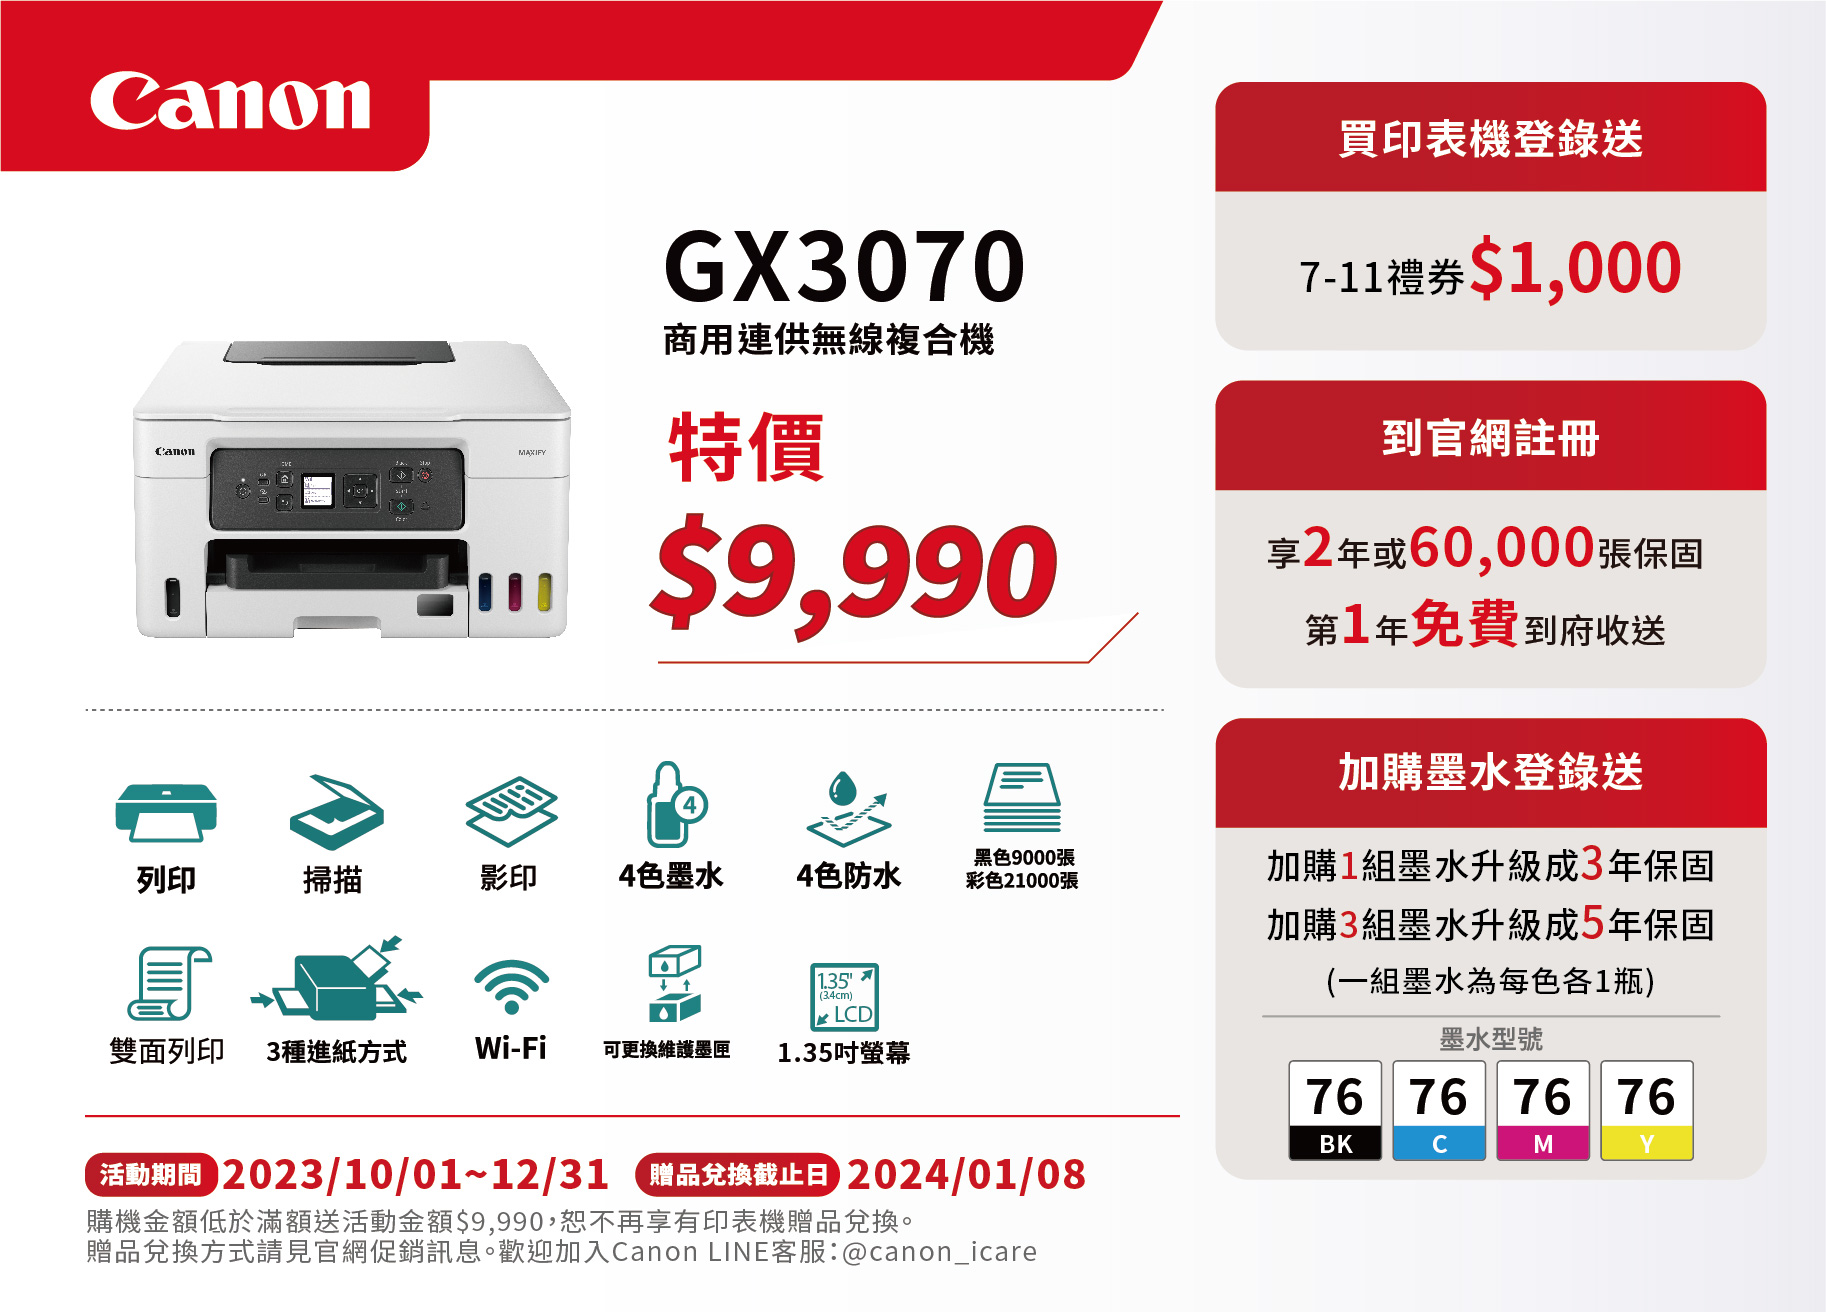 Canon-促銷DM印刷-GX3070-01